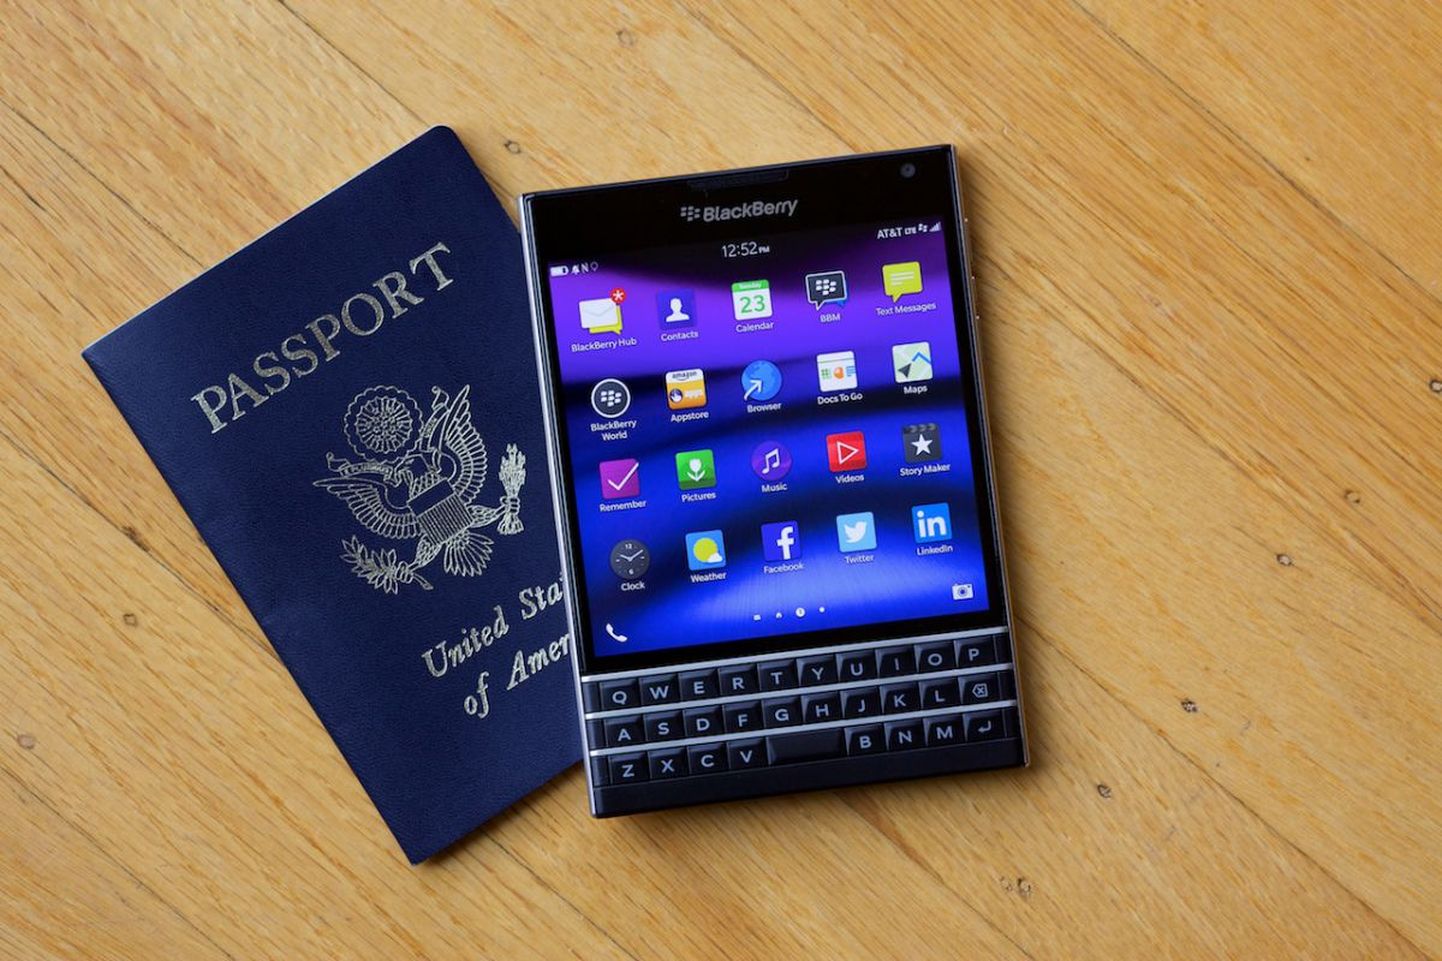 EMT kaalus kunagi ka BlackBerry müükivõtmist, kuid otsustas selle asemel hakata Eestis müüma iPhone. Pidil BlackBerry Passport, passiga ühte taskusse mahtuv nutiseade.